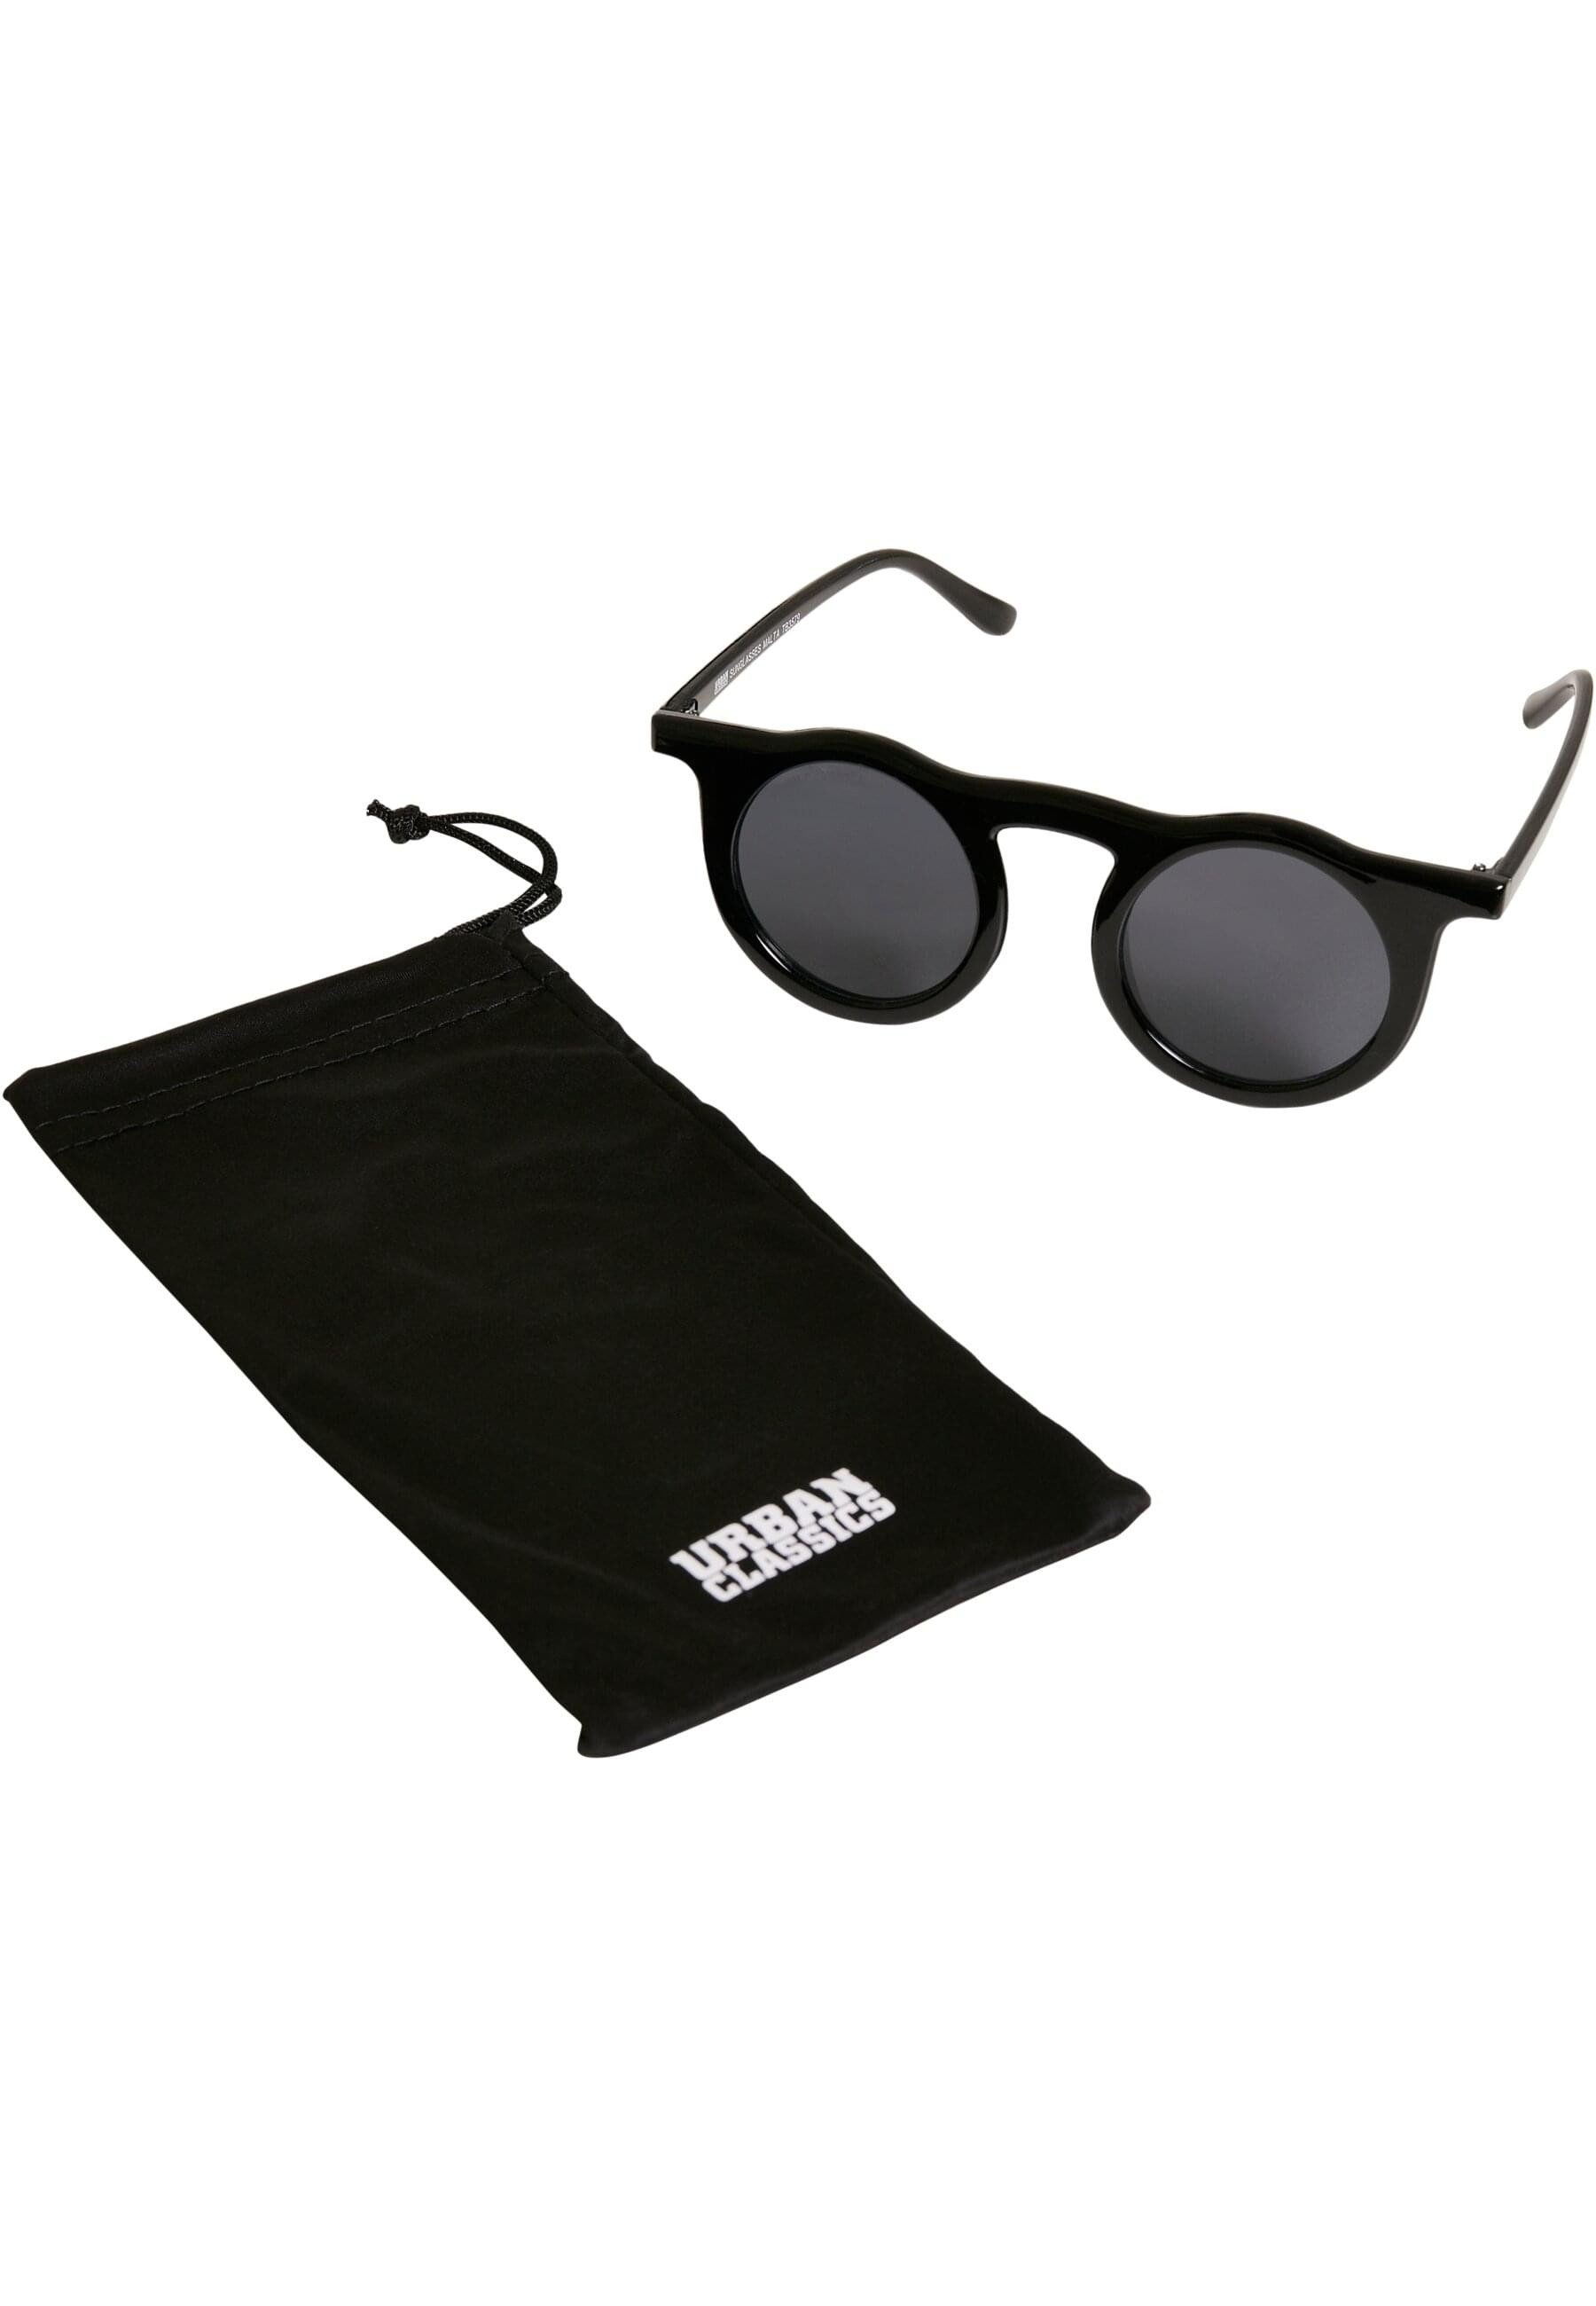 URBAN CLASSICS Sonnenbrille Urban Classics Unisex Sunglasses Malta